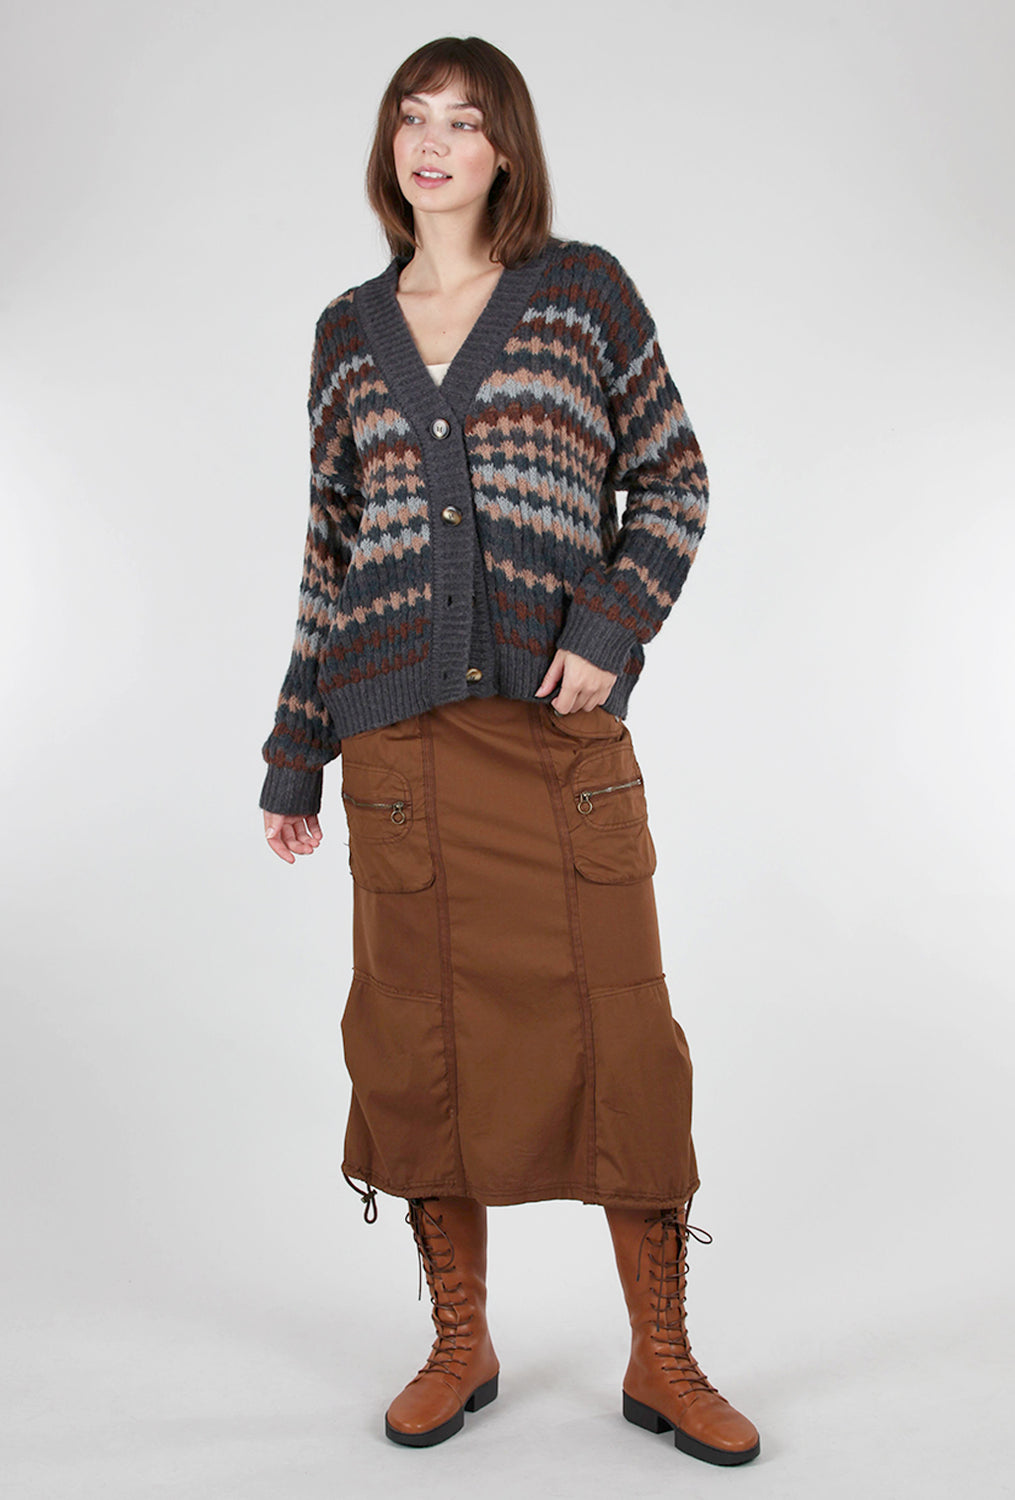 Multi-Color Knit Cardigan, Coal